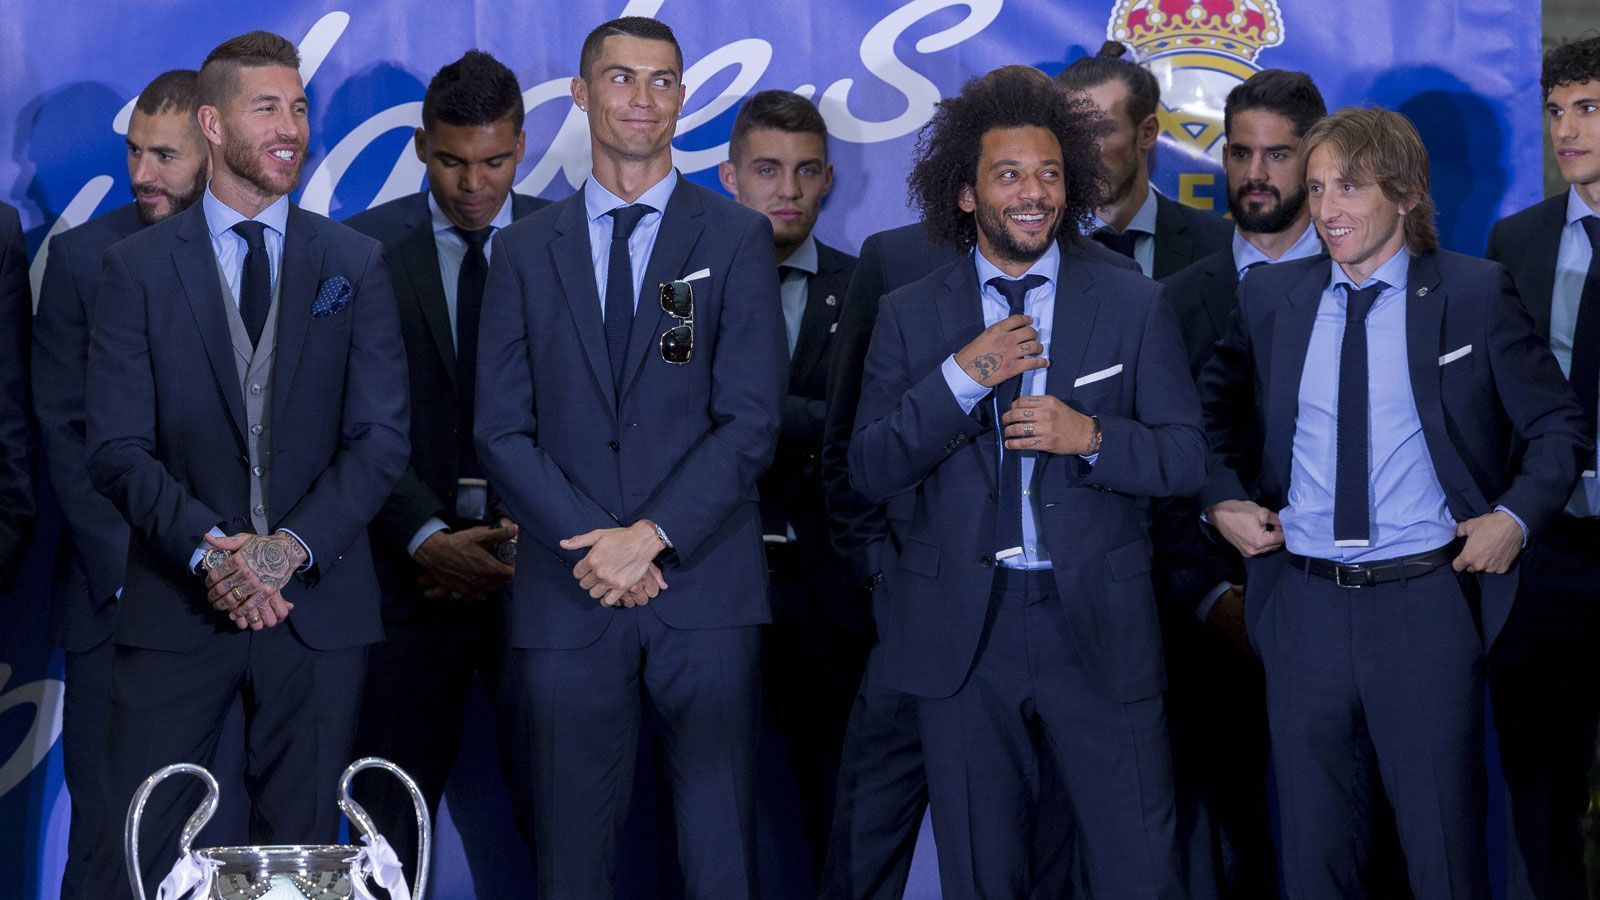 
                <strong>Die Gewinner der UEFA Awards 2018</strong><br>
                Die UEFA hat im Grimaldi Forum in Monaco nicht nur die Gruppen der Champions League 2018/2019 ausgelost. Das Event hat der Verband auch genutzt, um seine diversen Awards an den Mann zu bringen. Auch dabei griff Champions-League-Sieger Real Madrid ordentlich zu. ran.de präsentiert die Gewinner der wichtigsten Kategorien.
              